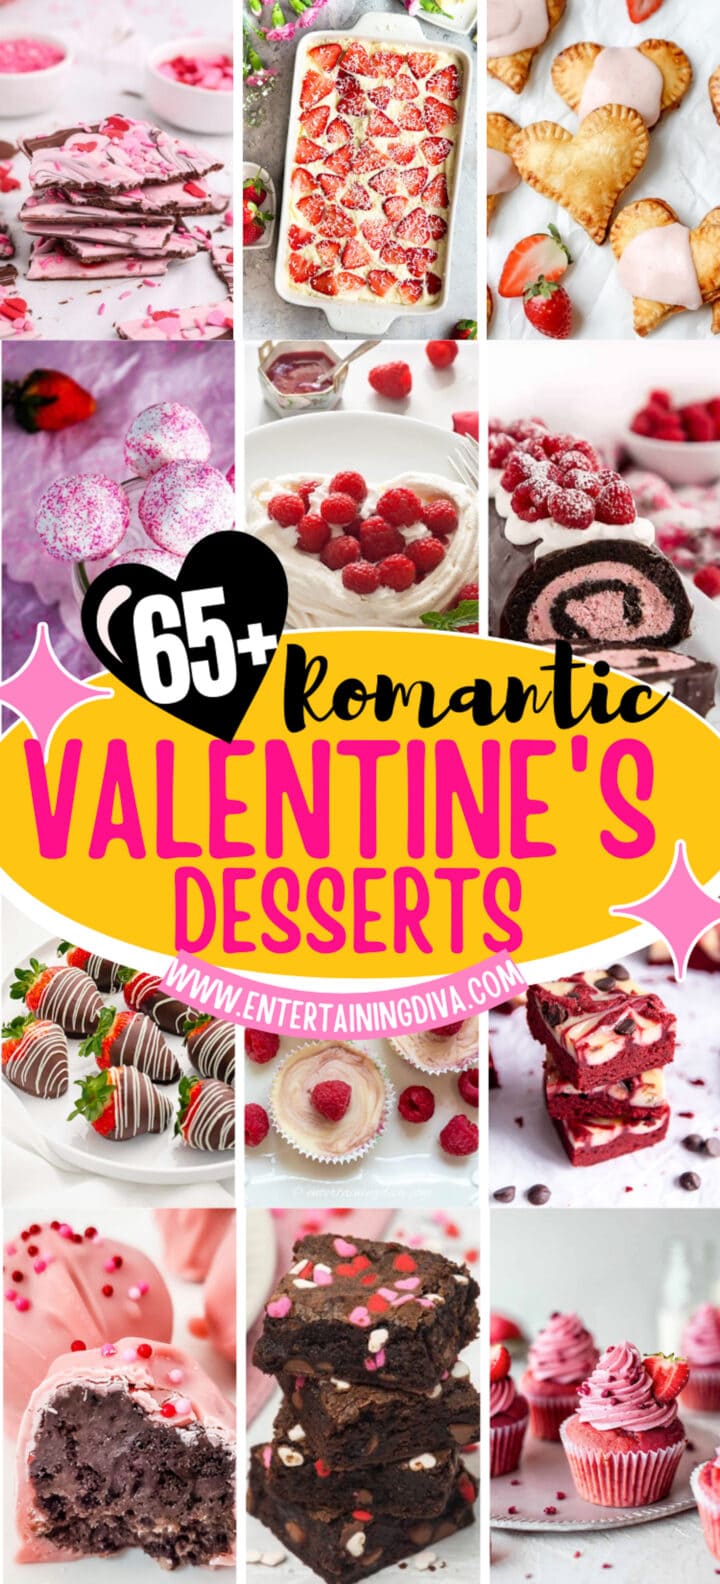 65+ of the Best Valentine's Day Dessert Ideas